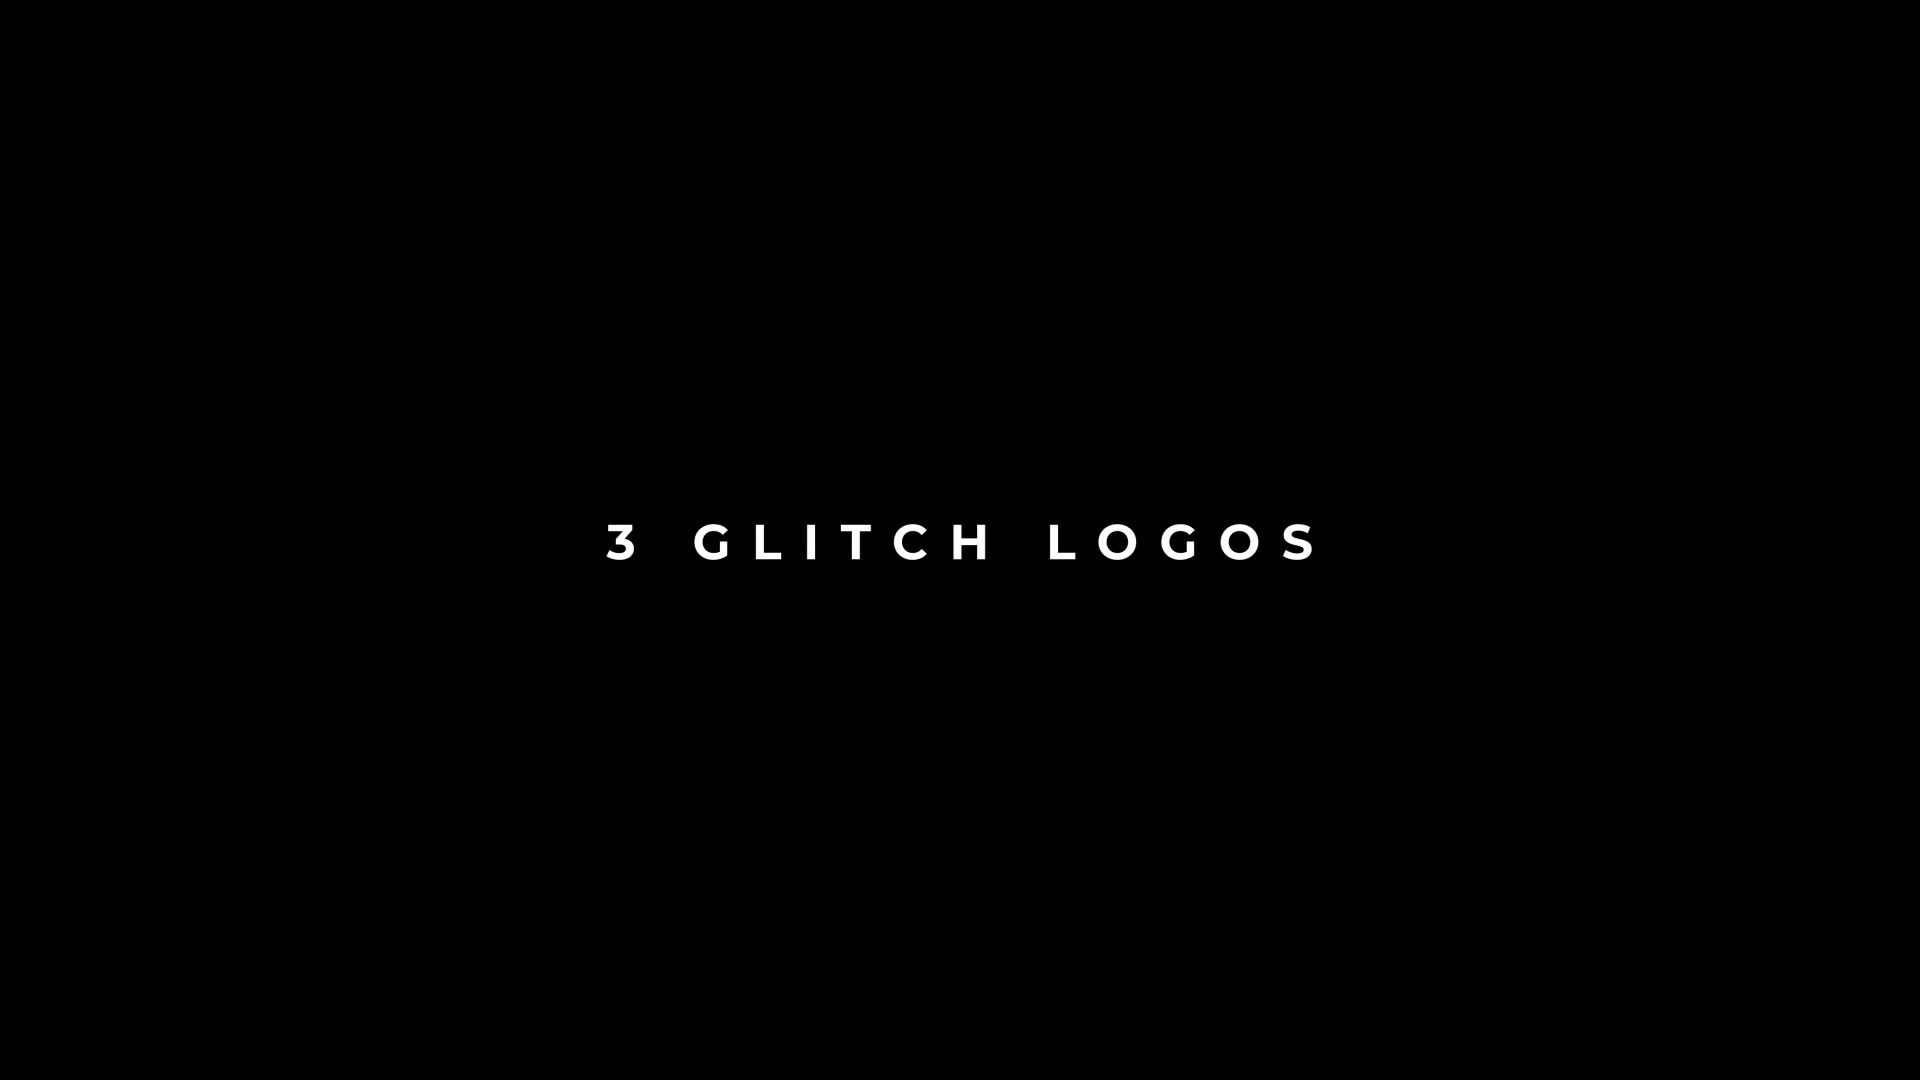 Glitch Logos For Premiere Pro Videohive 34134325 Premiere Pro Image 1